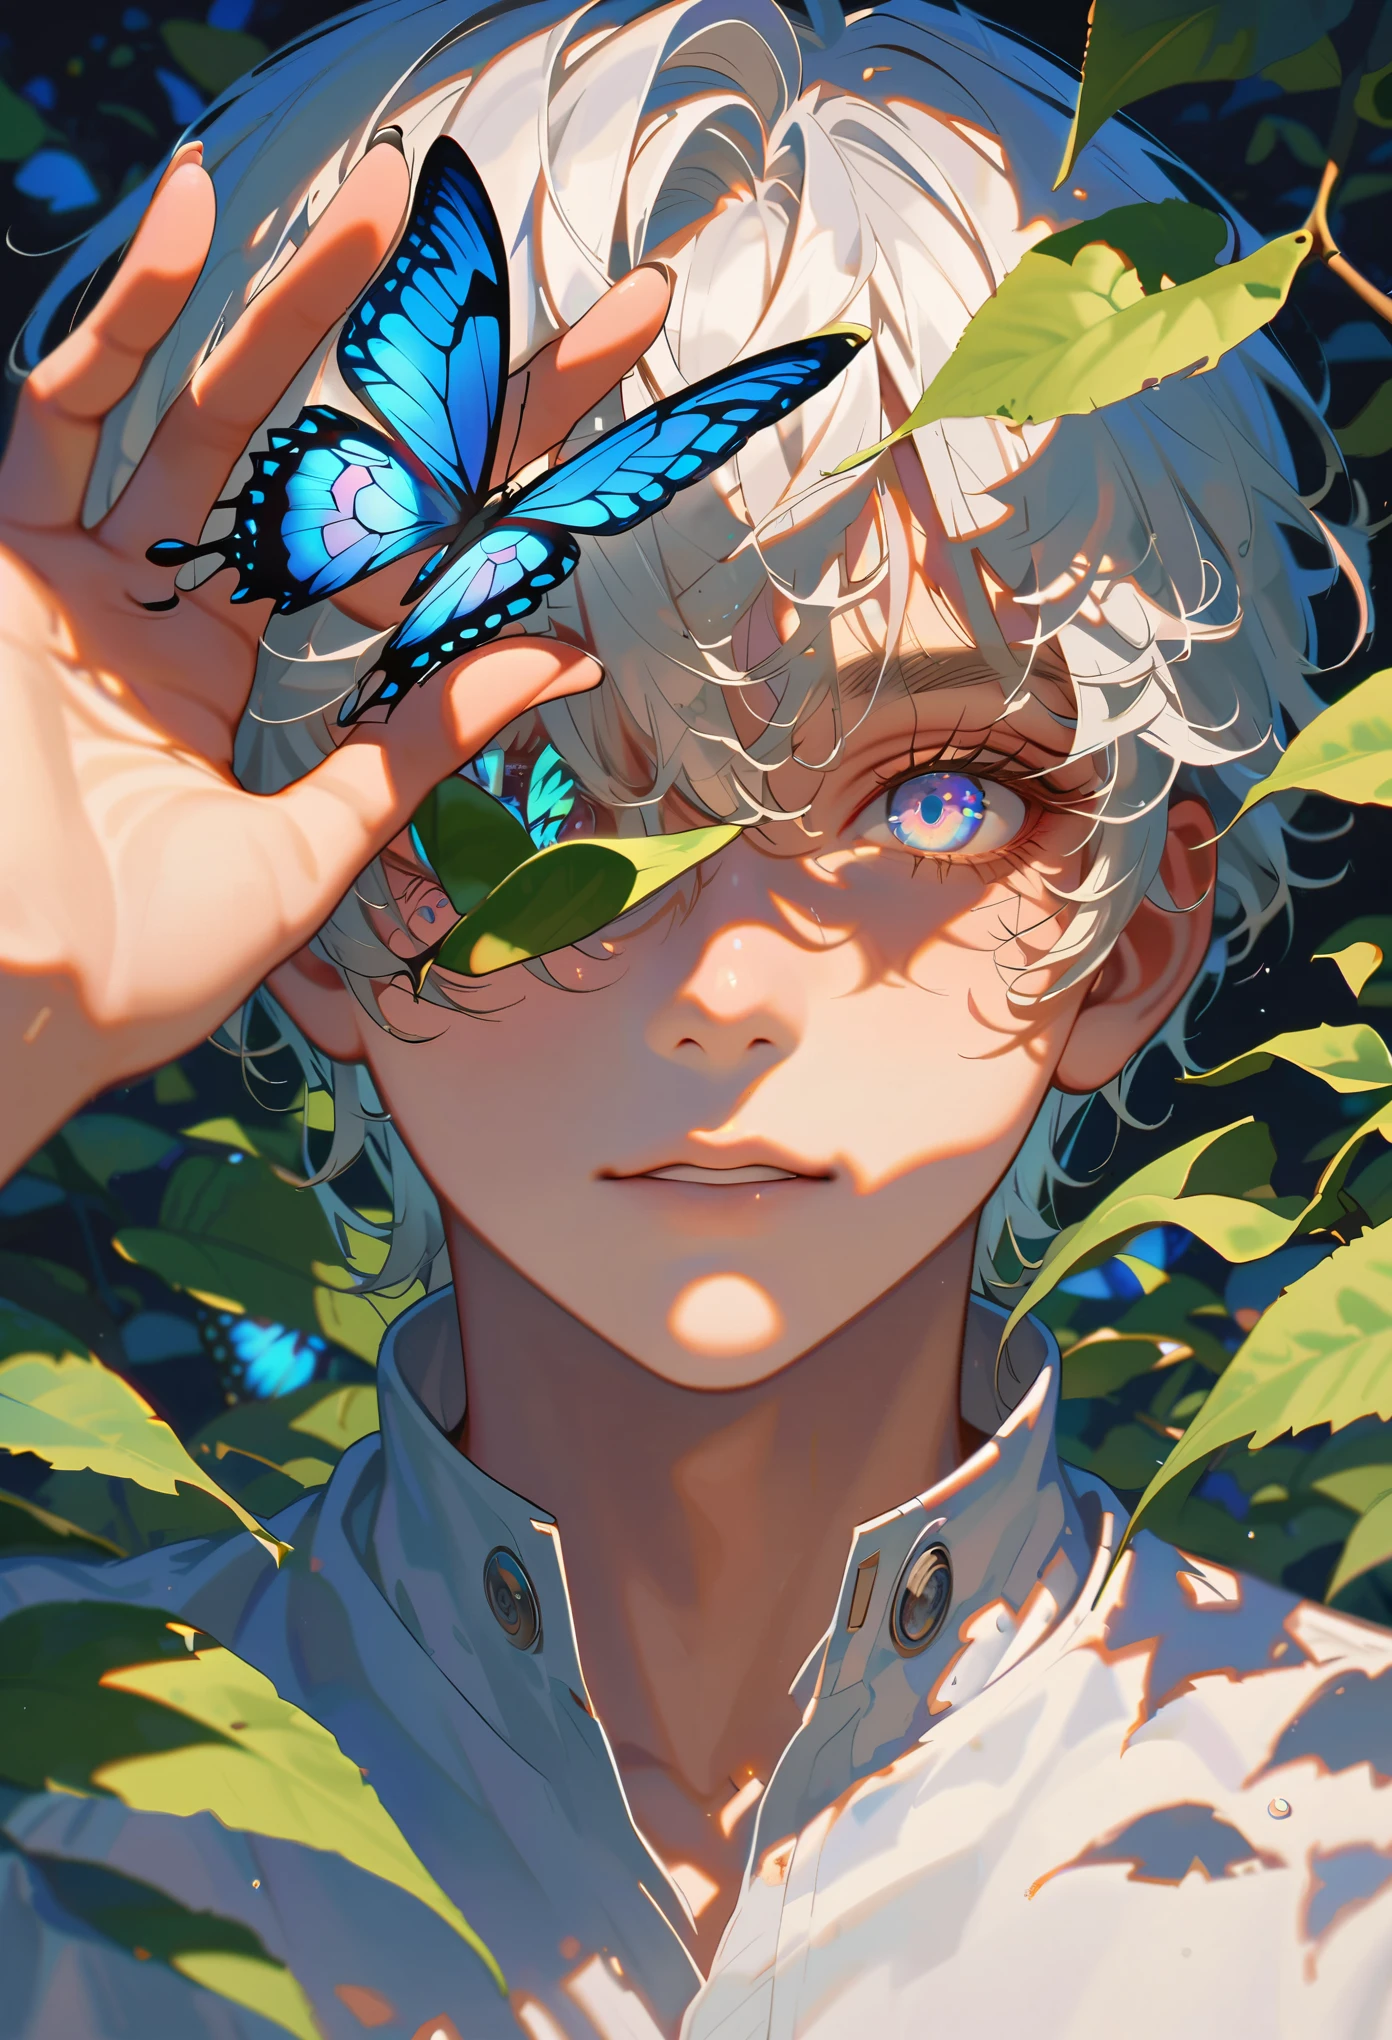 스타일9，소년，나뭇잎으로 한쪽 눈을 가리세요，나비가 눈에 떨어지다